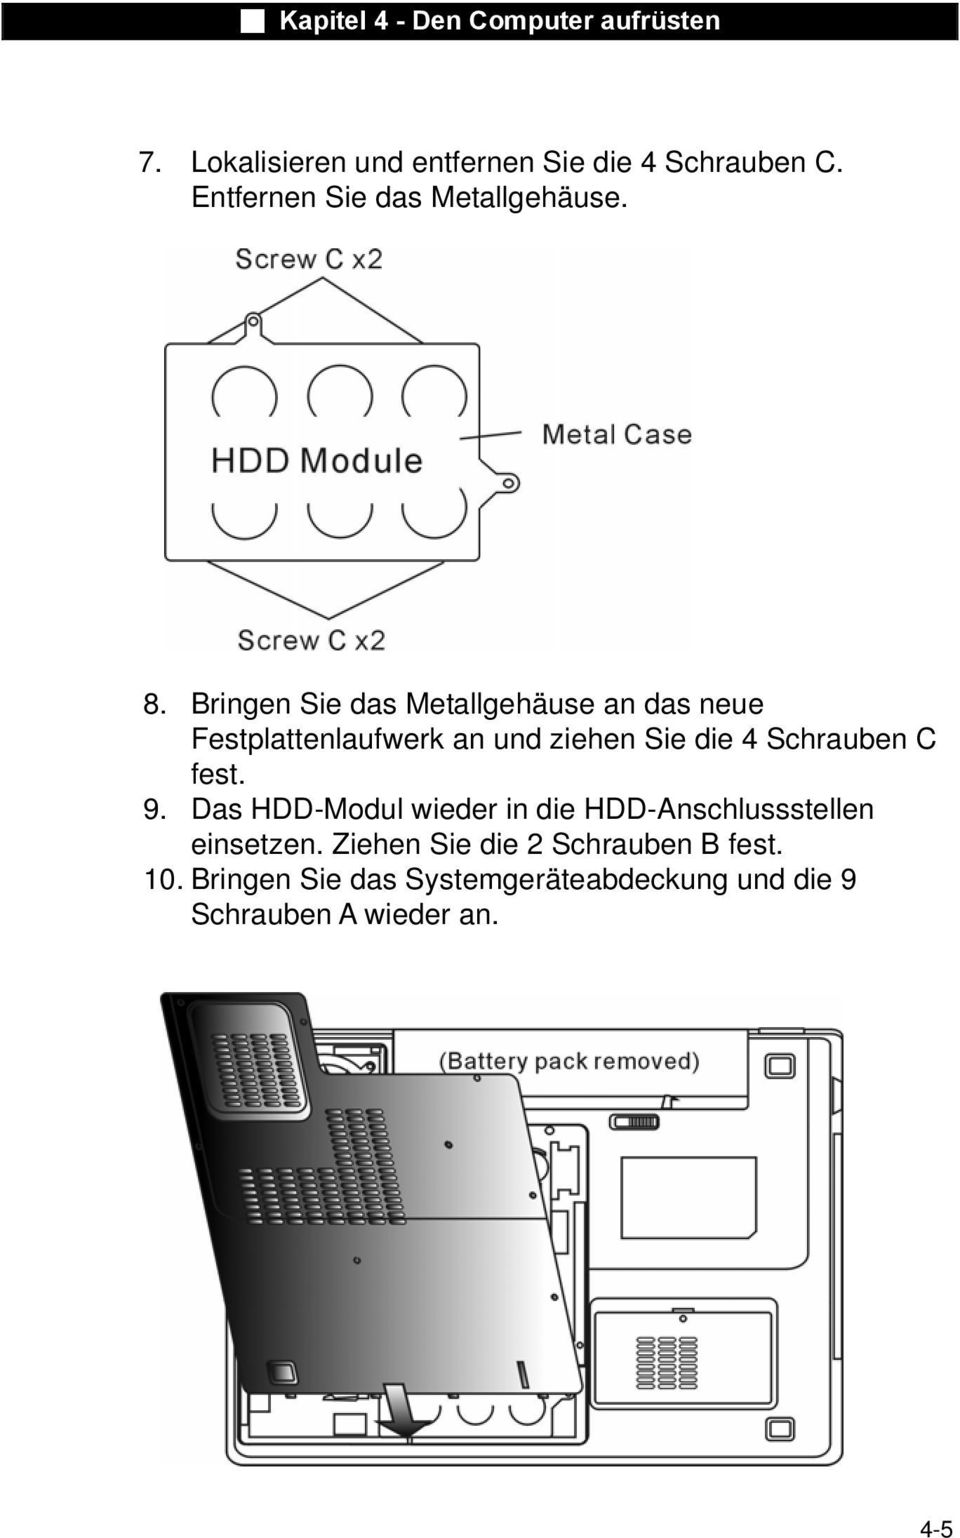 Schrauben C fest. 9. Das HDD-Modul wieder in die HDD-Anschlussstellen einsetzen.